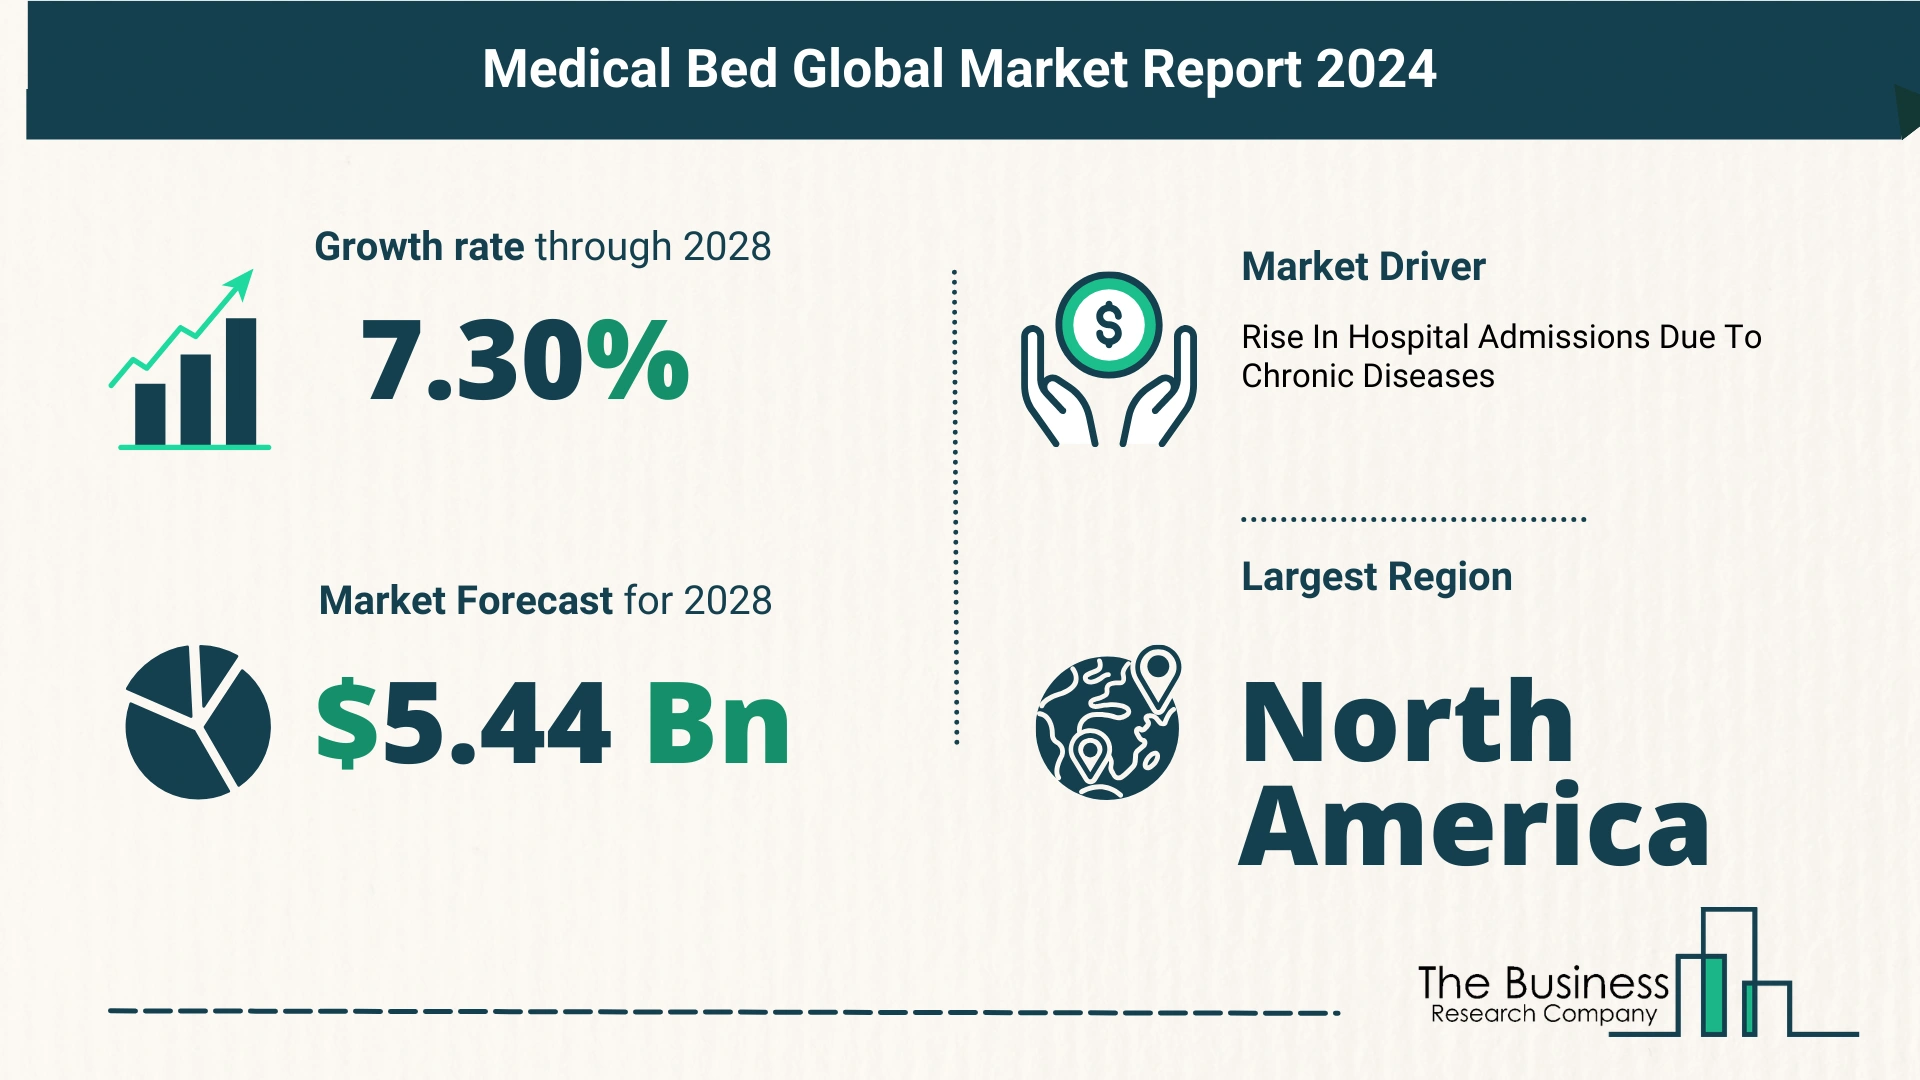 Global Medical Bed Market